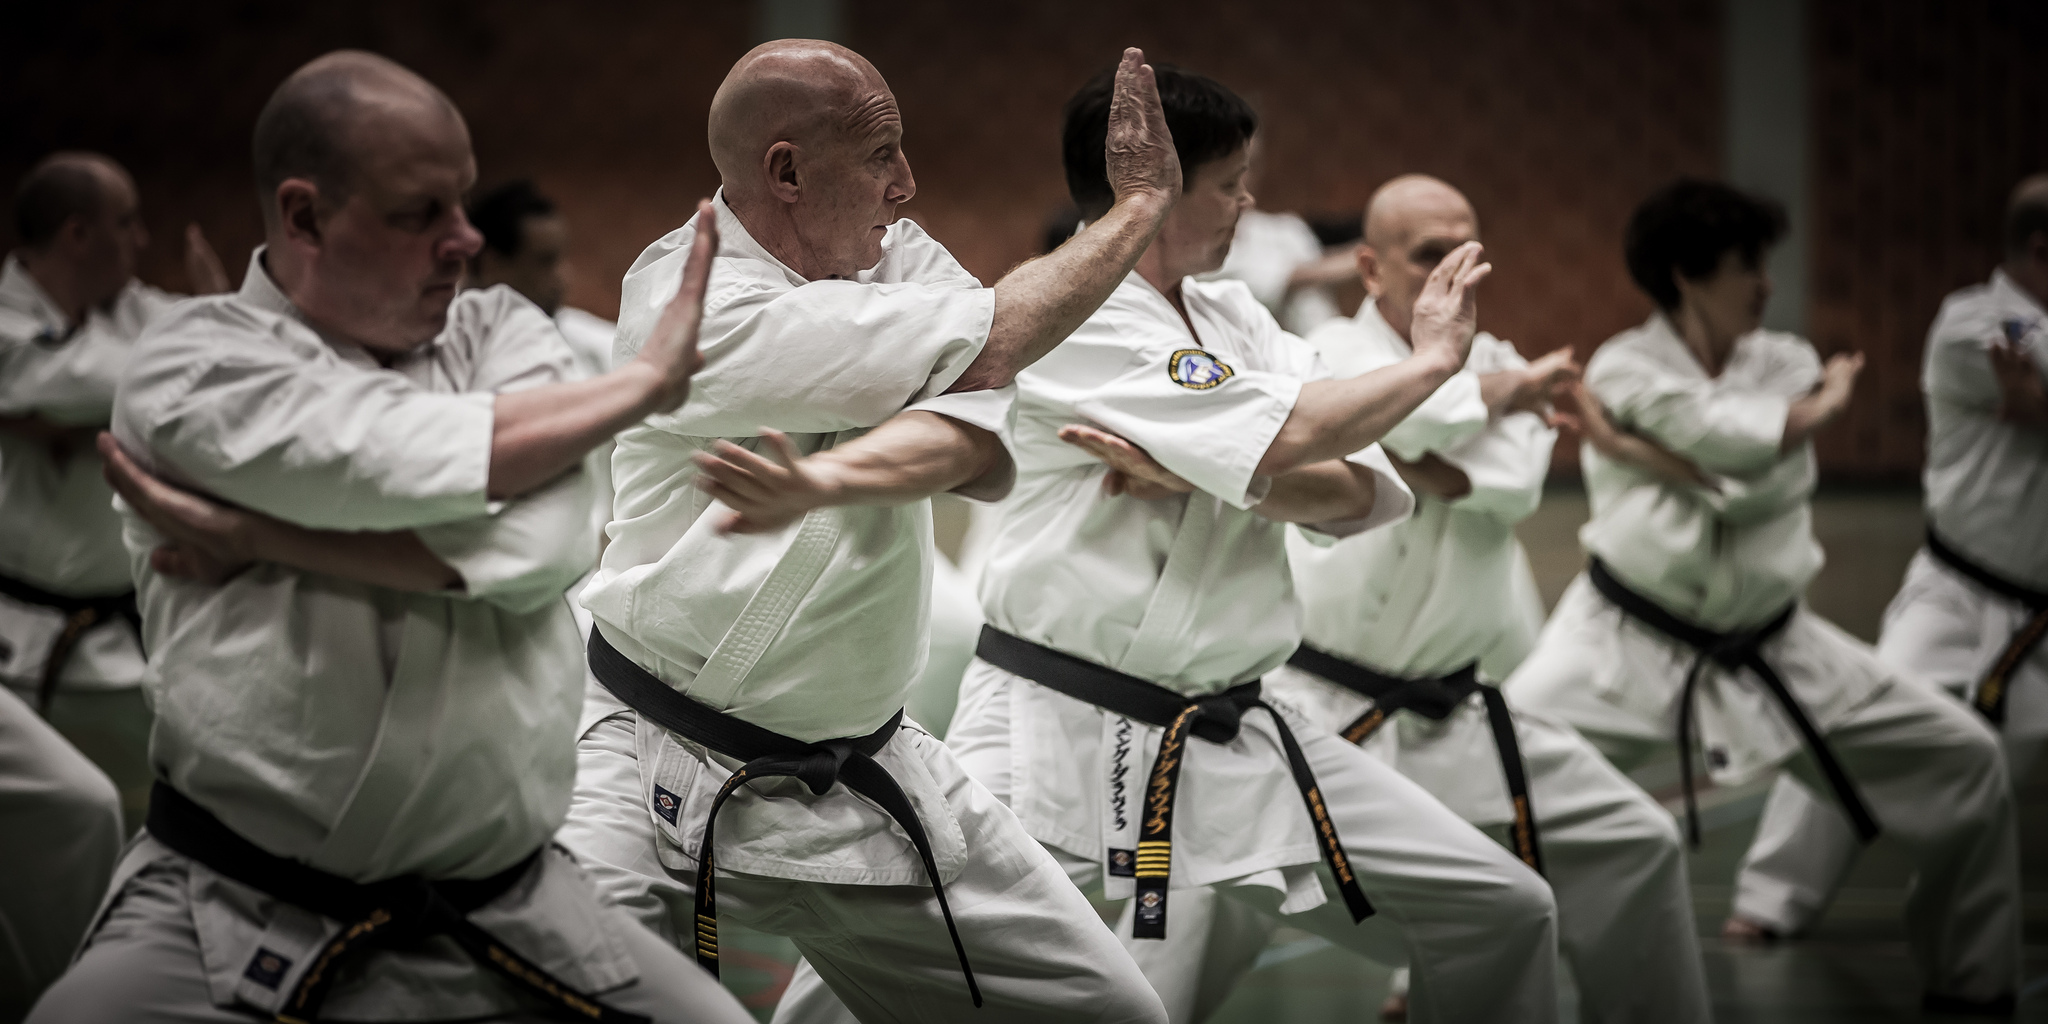 History of Kyokushin Kata - The Martial Way